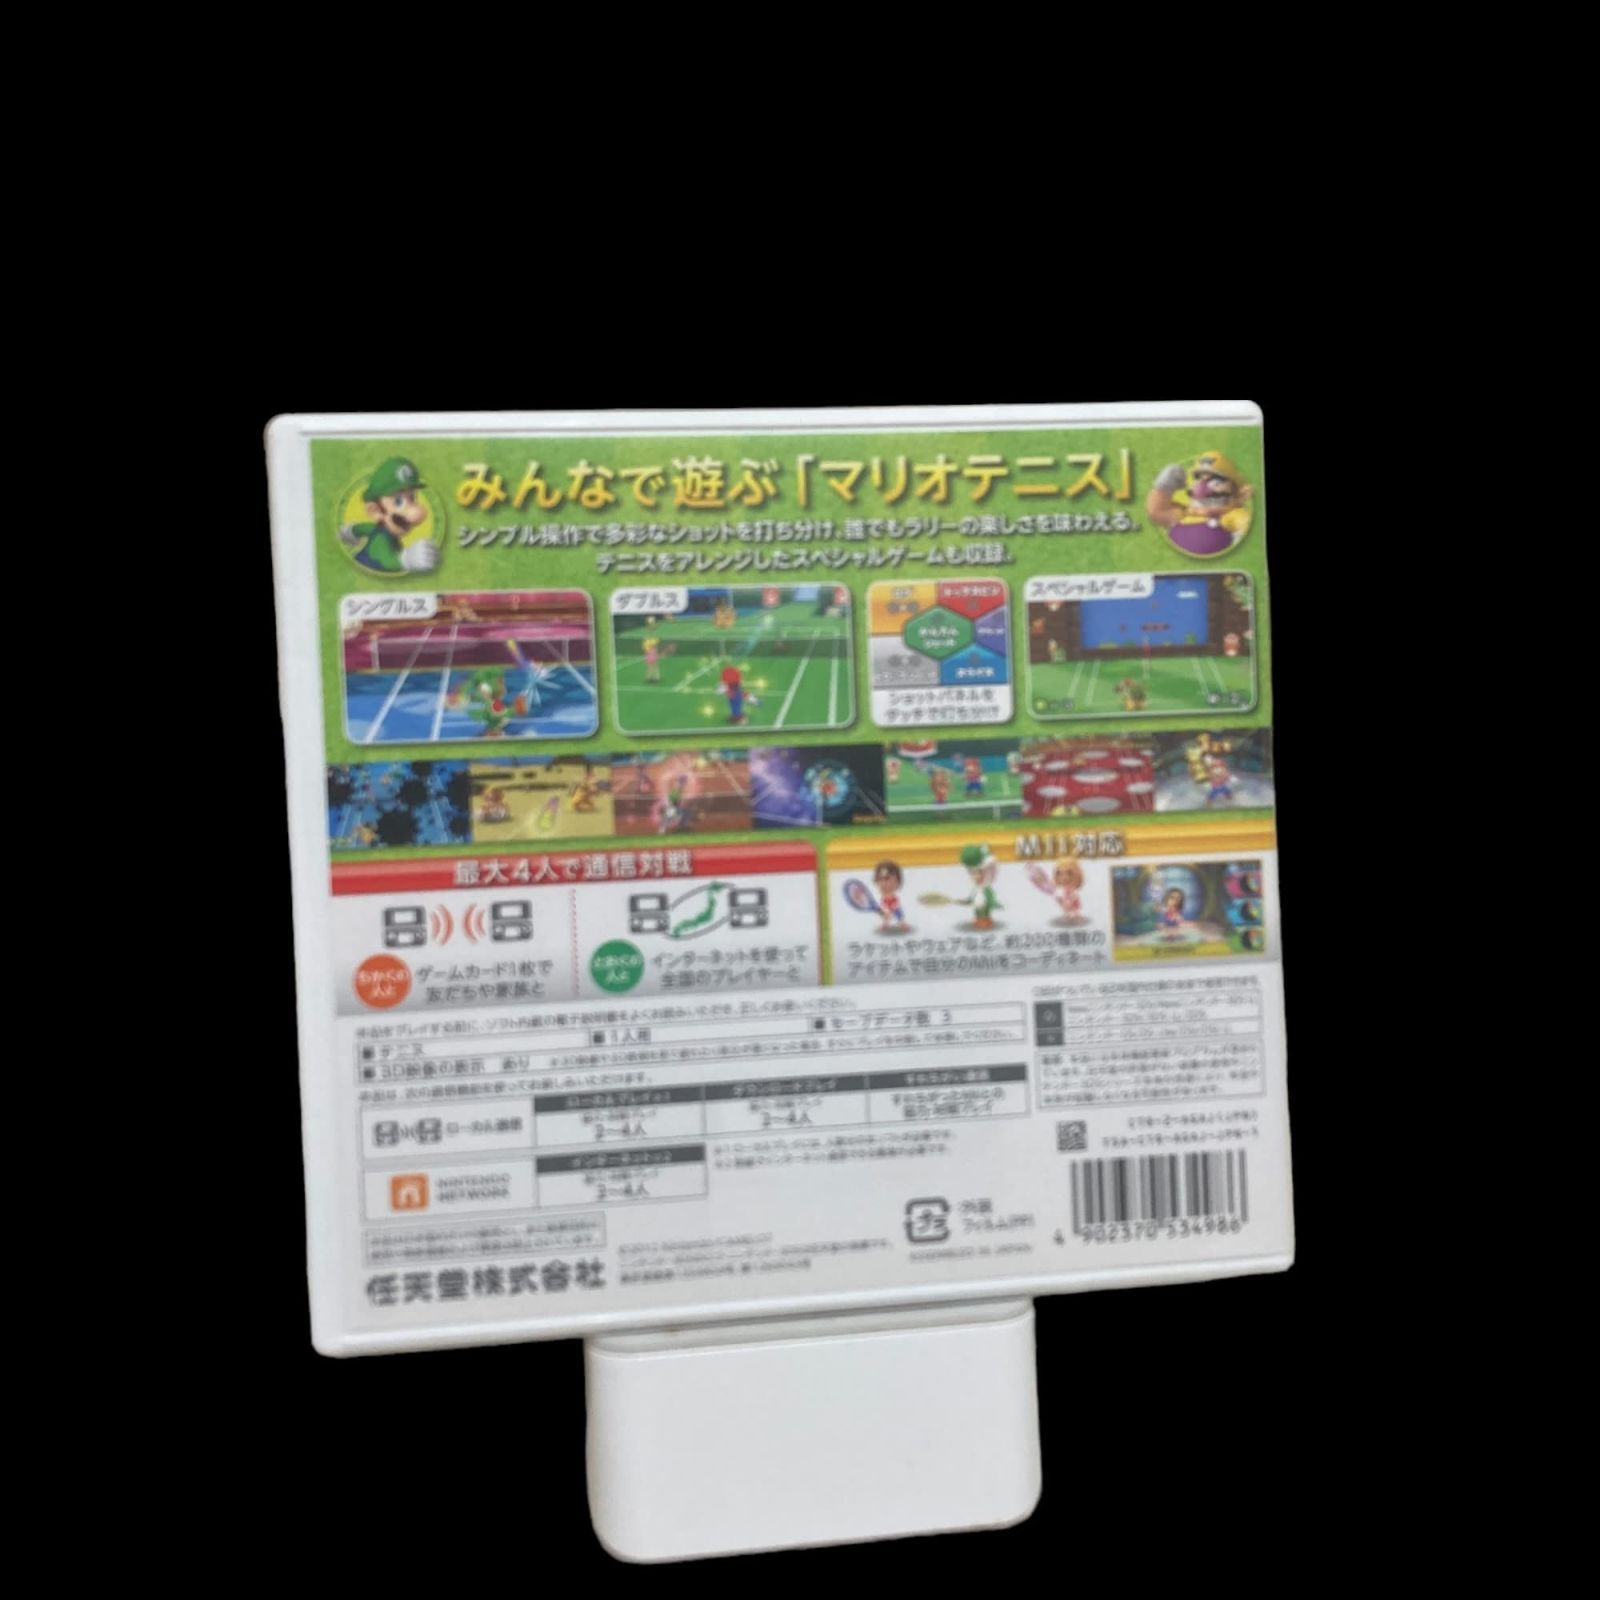 ハッピープライスセレクション マリオテニス オープン - 3DS - メルカリ